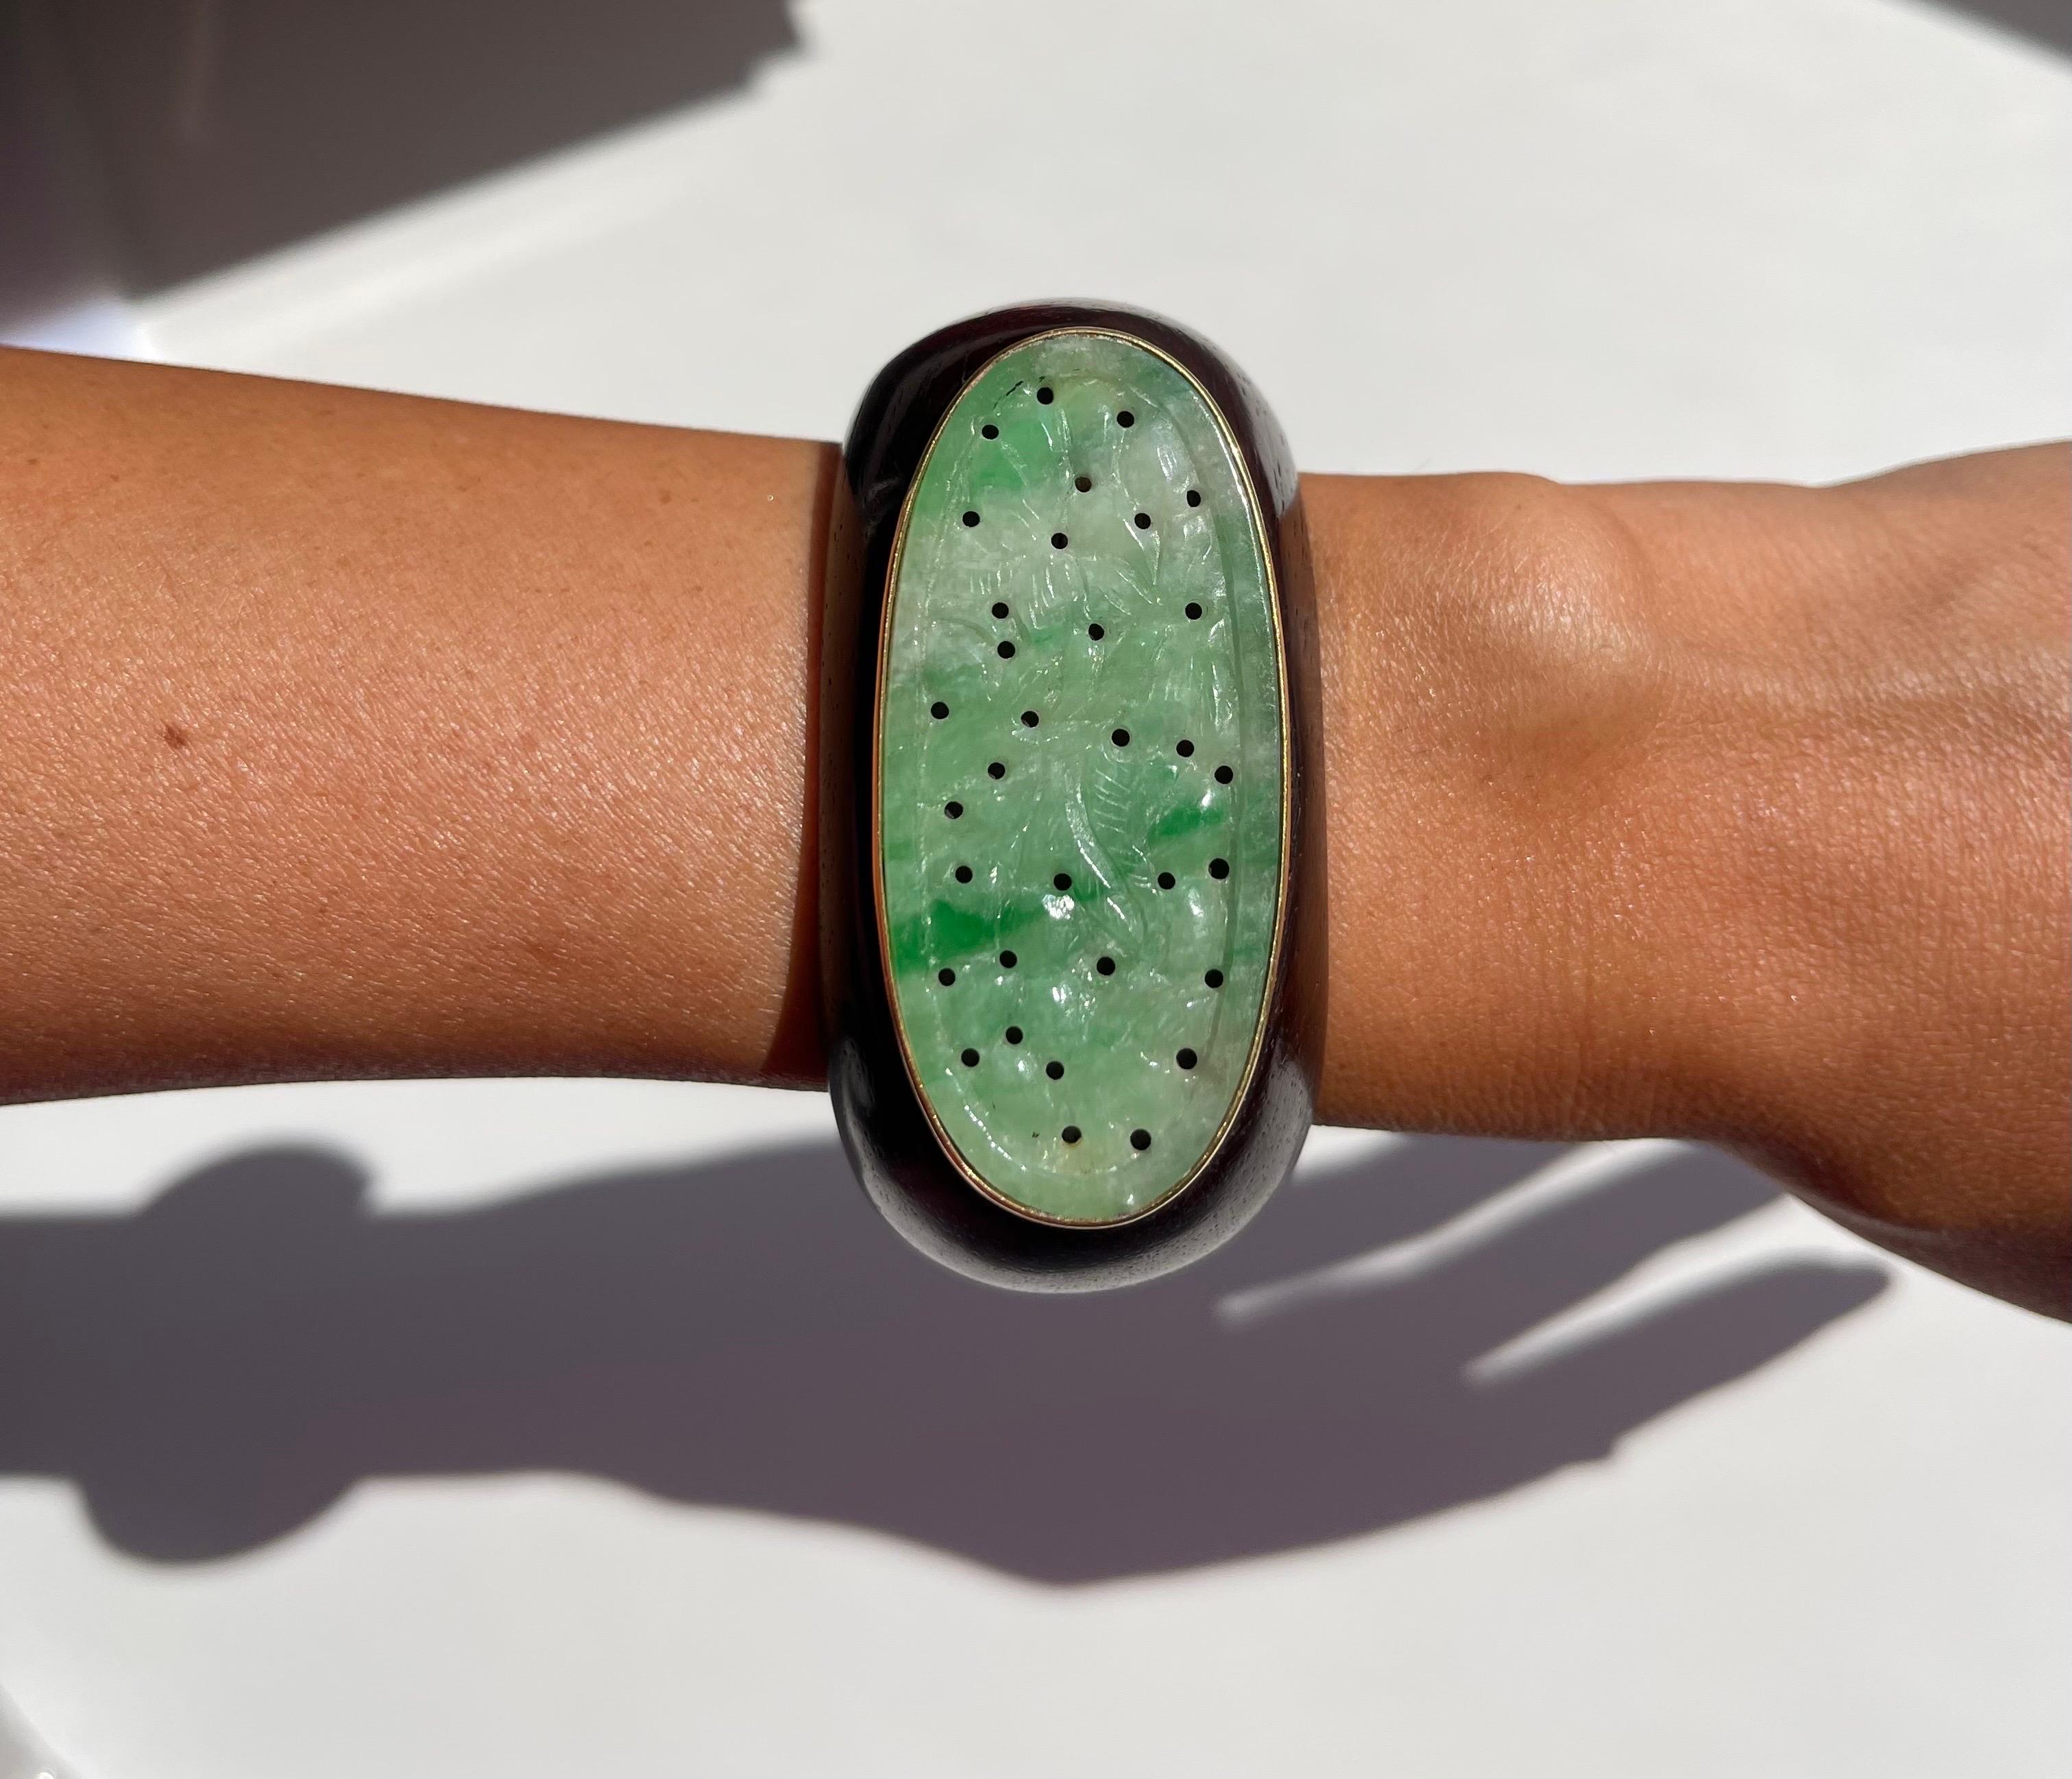 Dieses prächtige Armband ist ein Einzelstück, das aus einer ovalen, handgeschnitzten Jade besteht, die in 18-karätiges Gelbgold gefasst und an einem Holzarmband befestigt ist.  Traditionelle MATERIALIEN und einzigartige Akzente schaffen ein